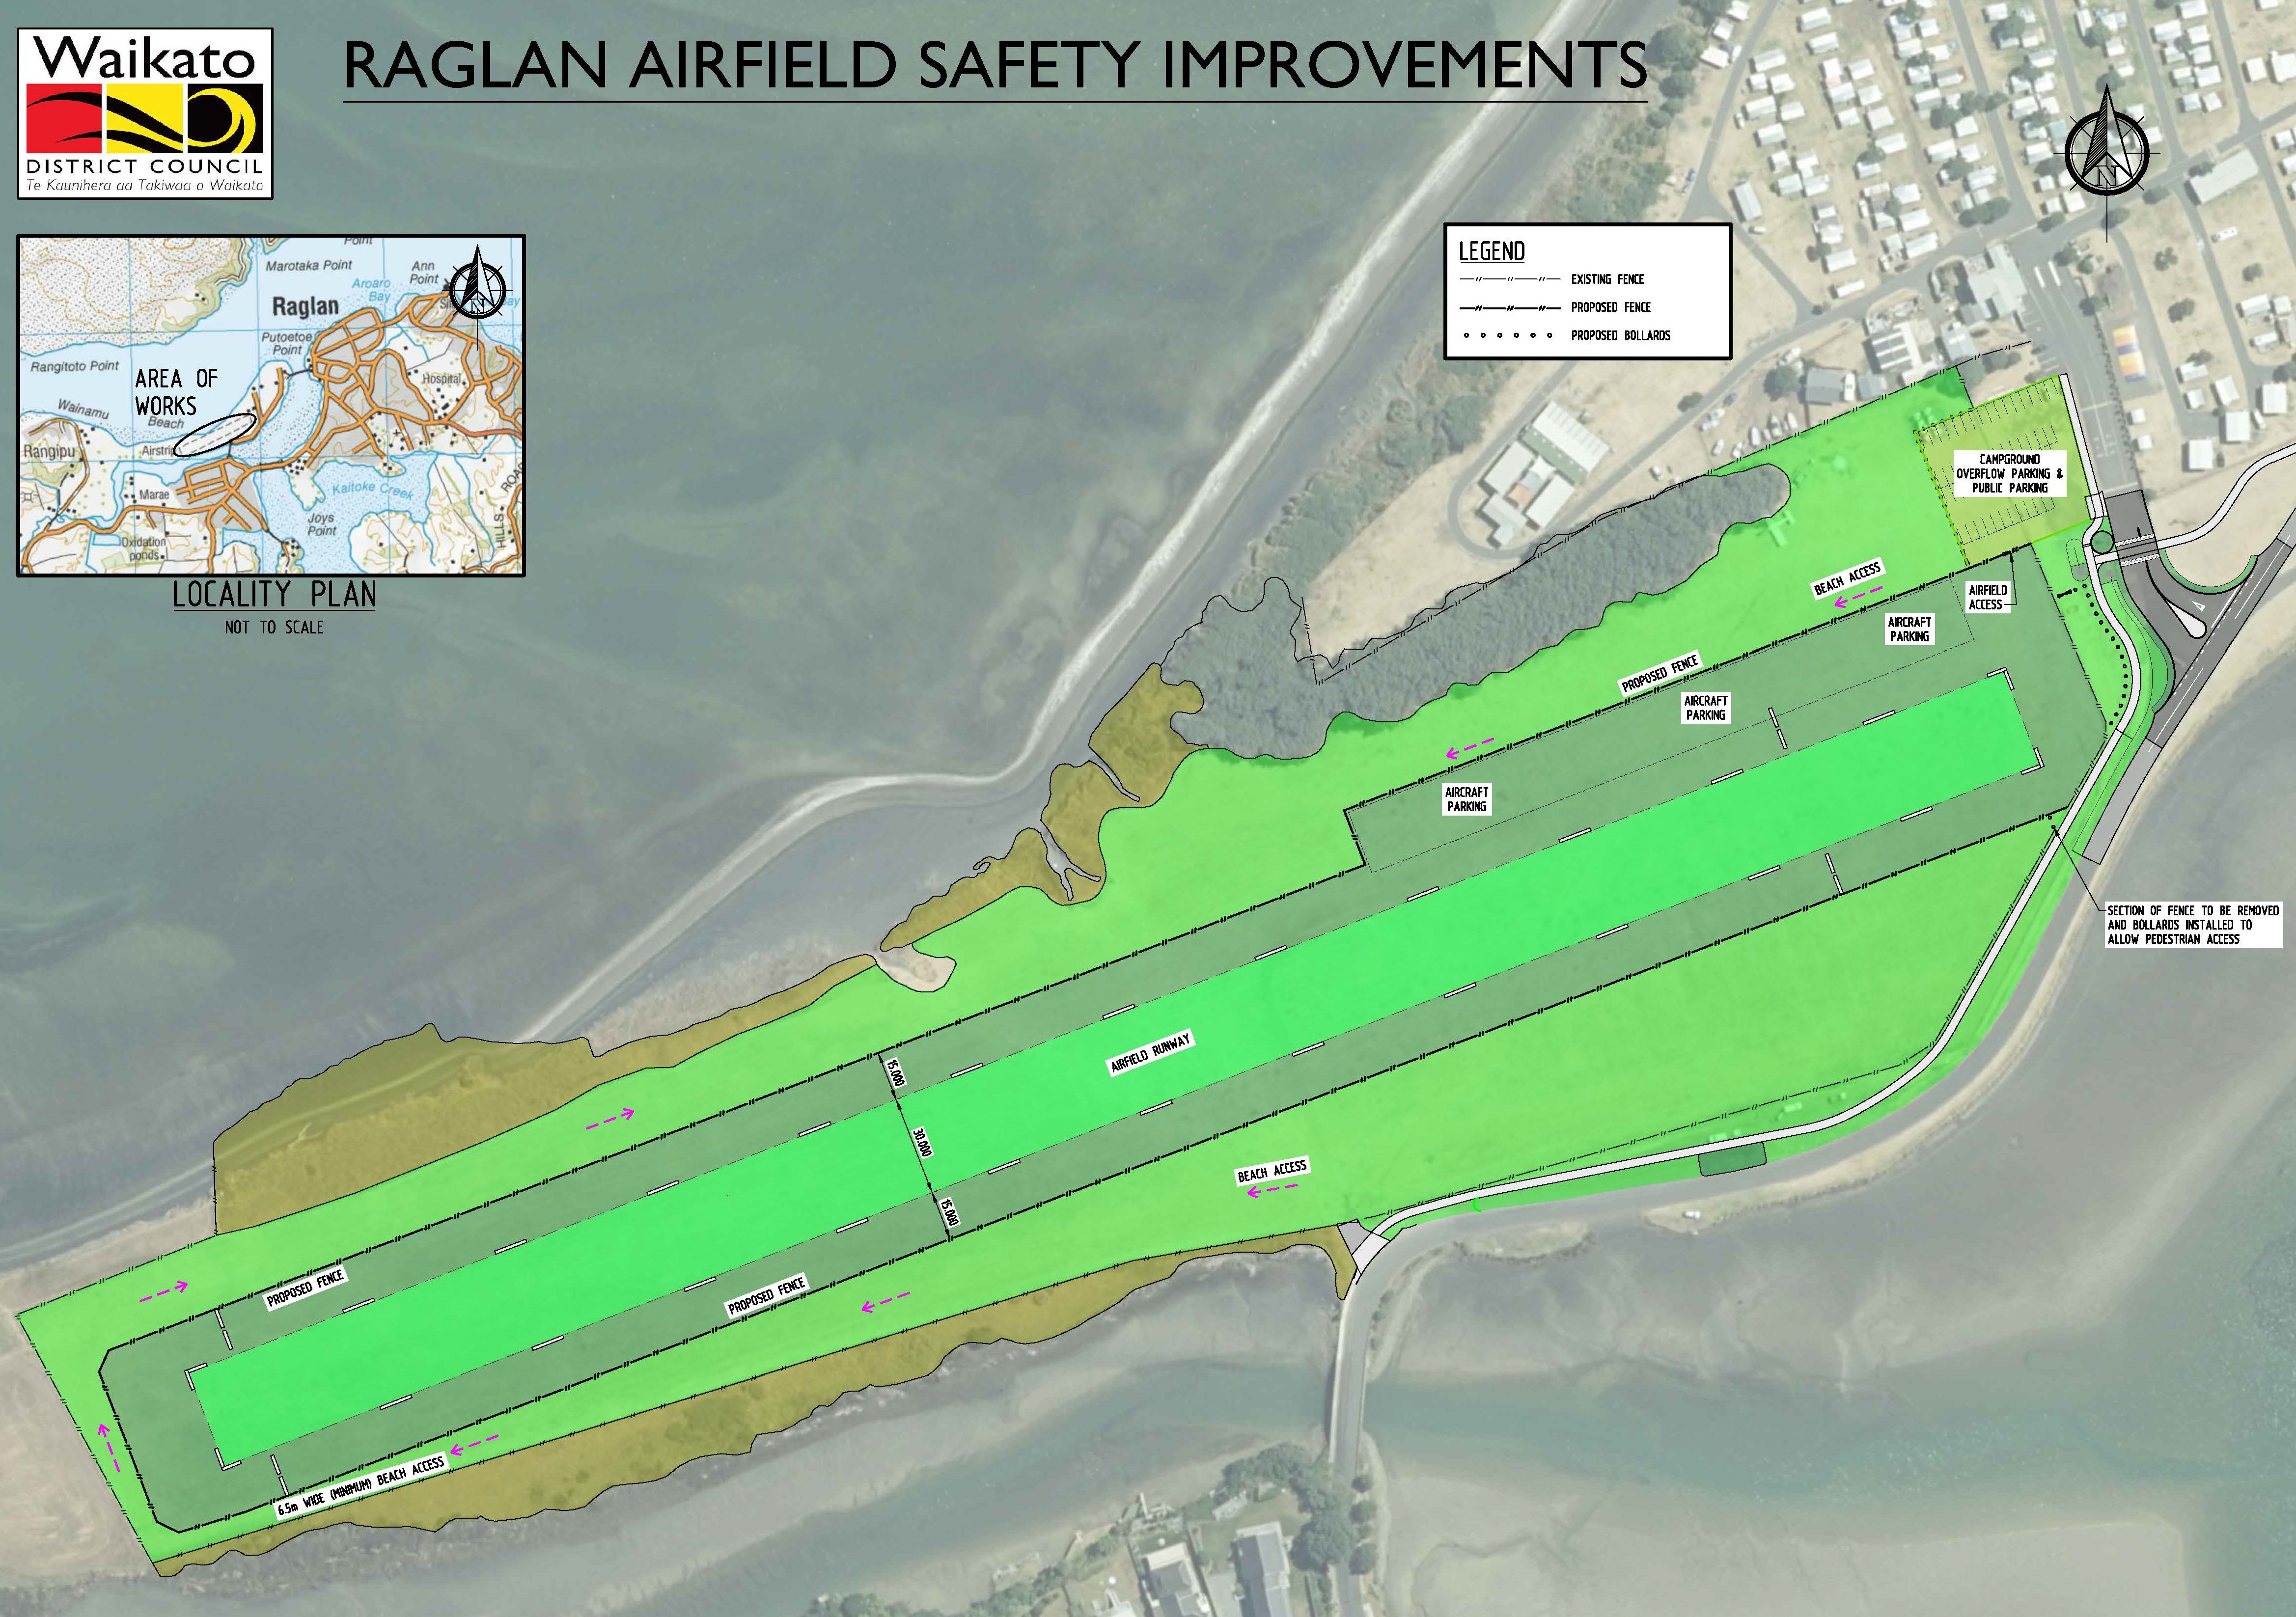 Raglan Airfield Safety Improvements